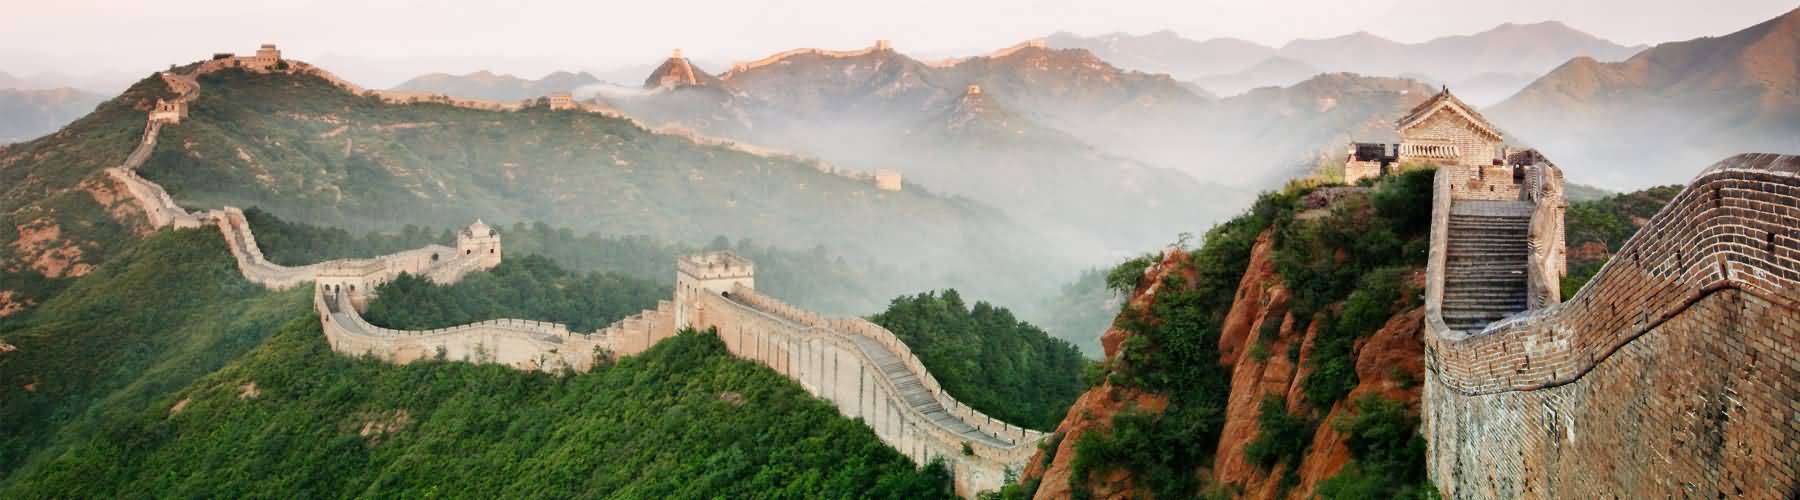 Great Wall in Beijing